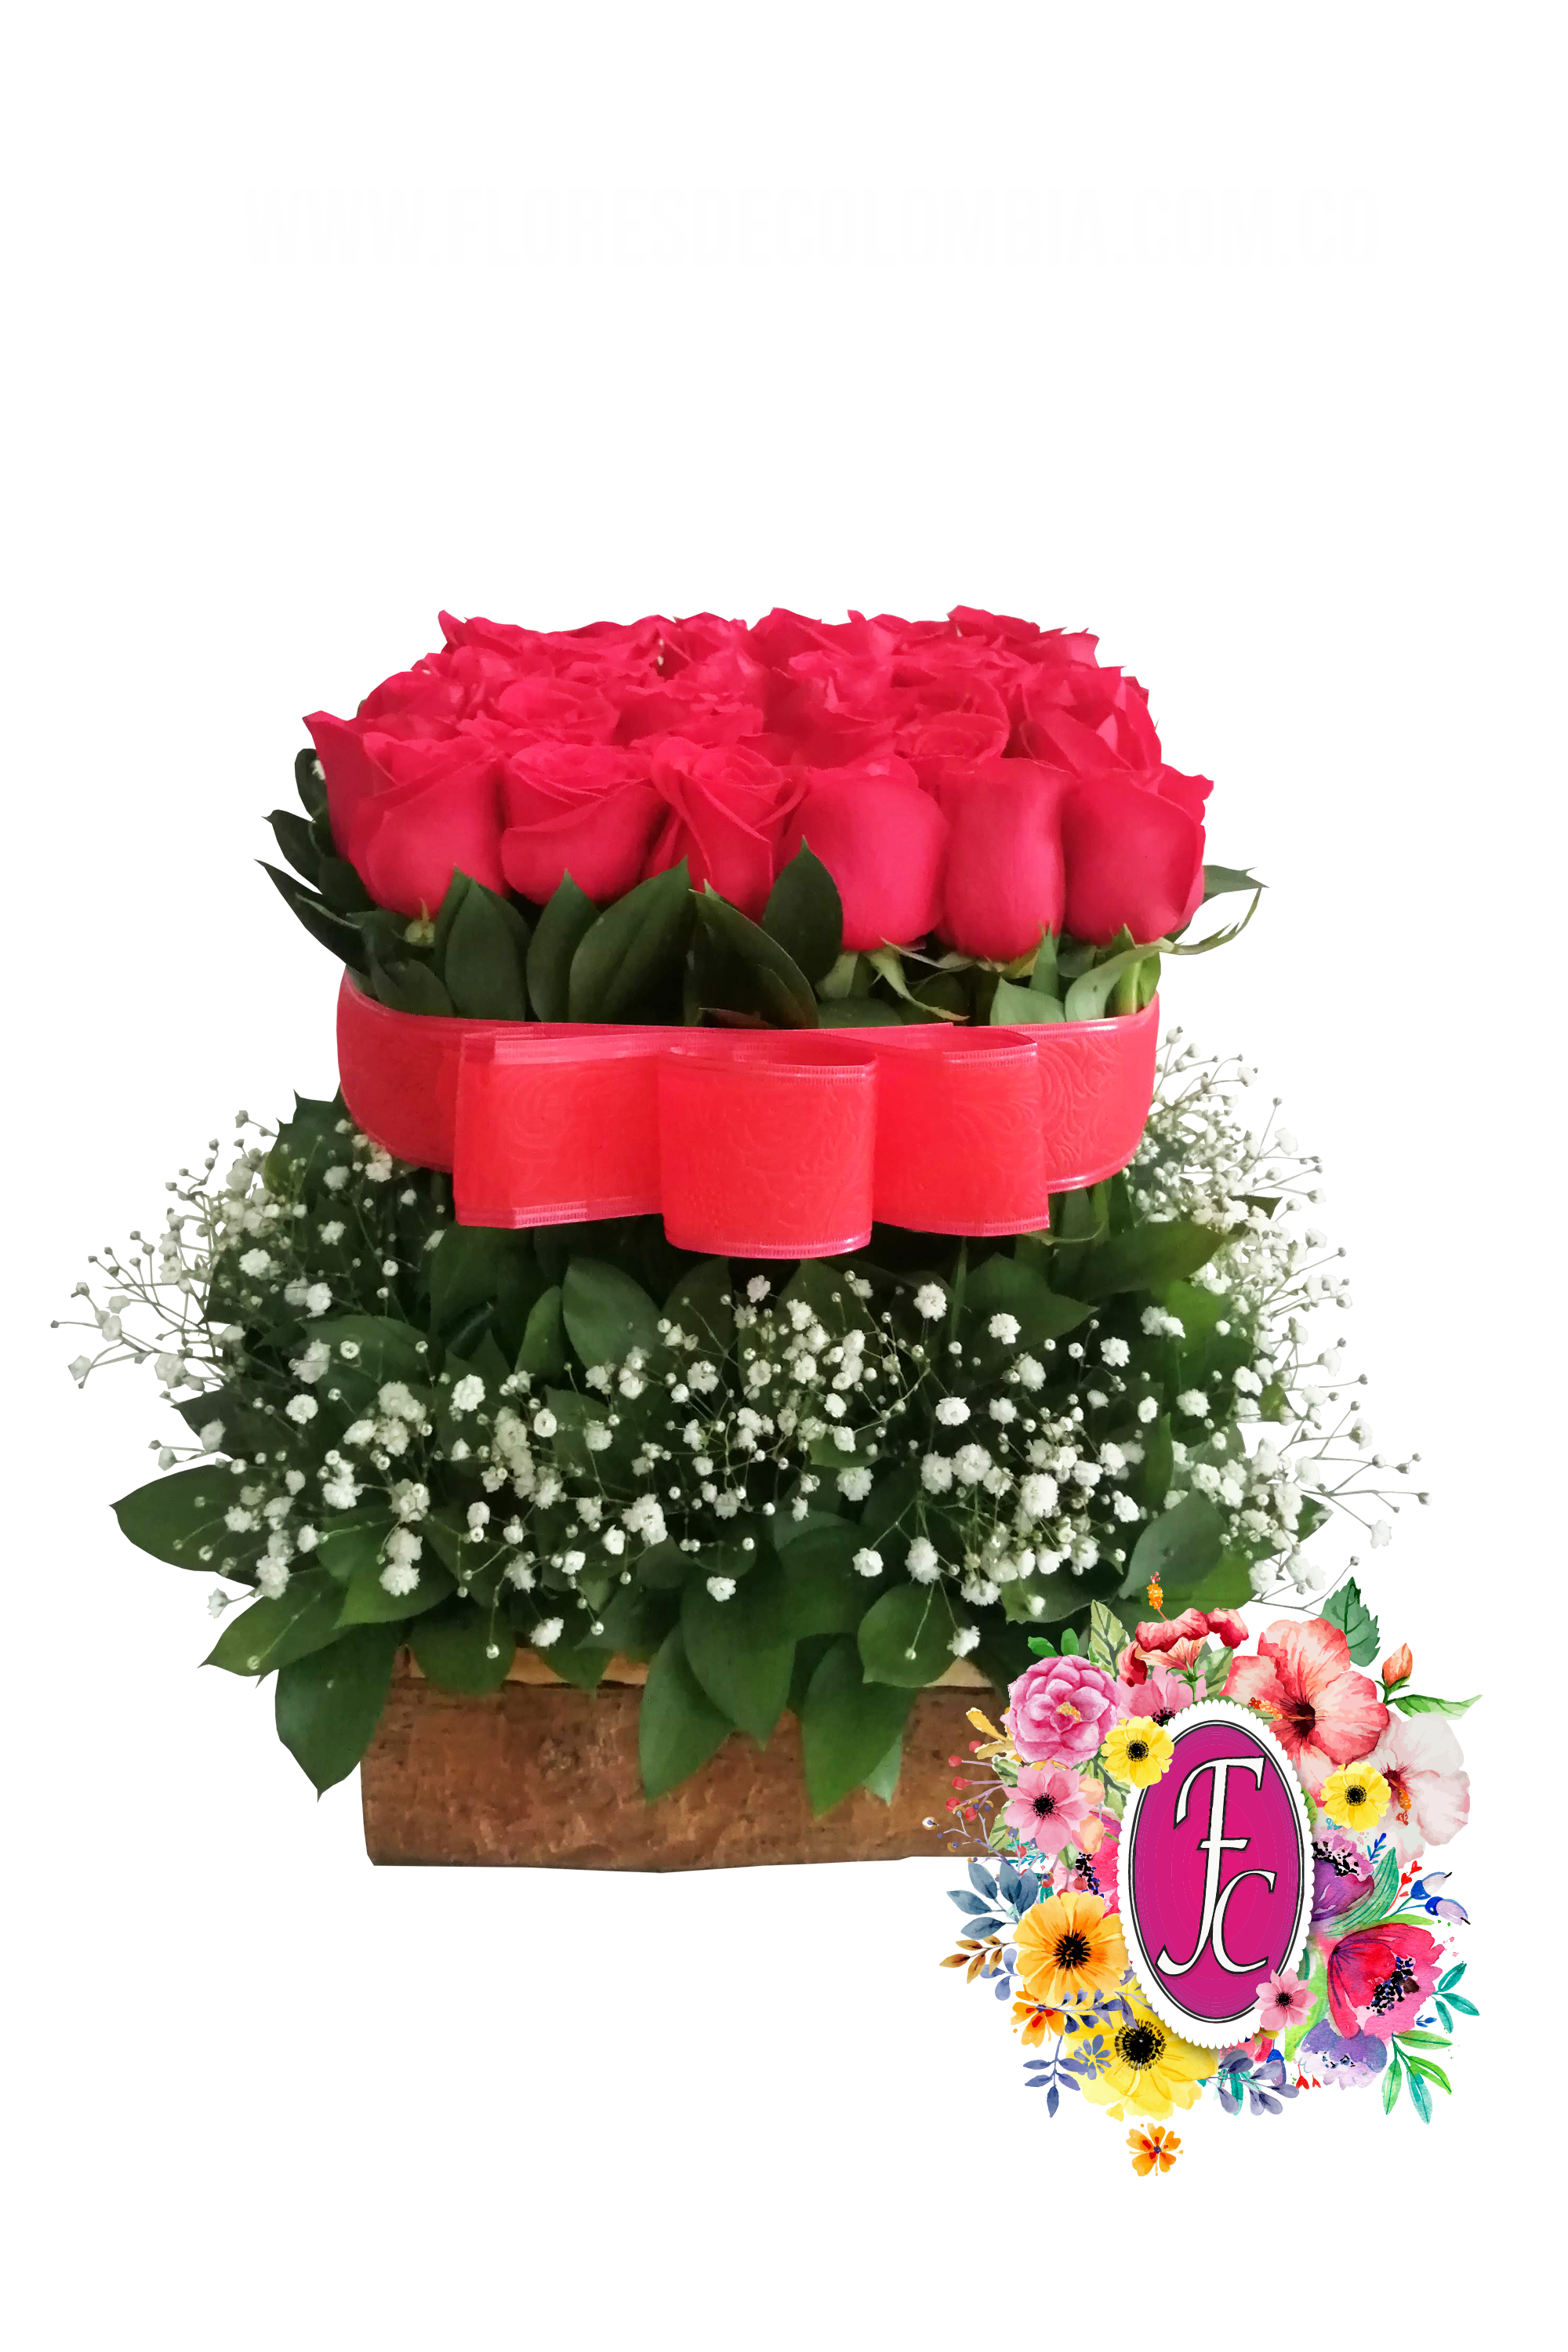 Pabel mediano de rosas │ Flores de Colombia